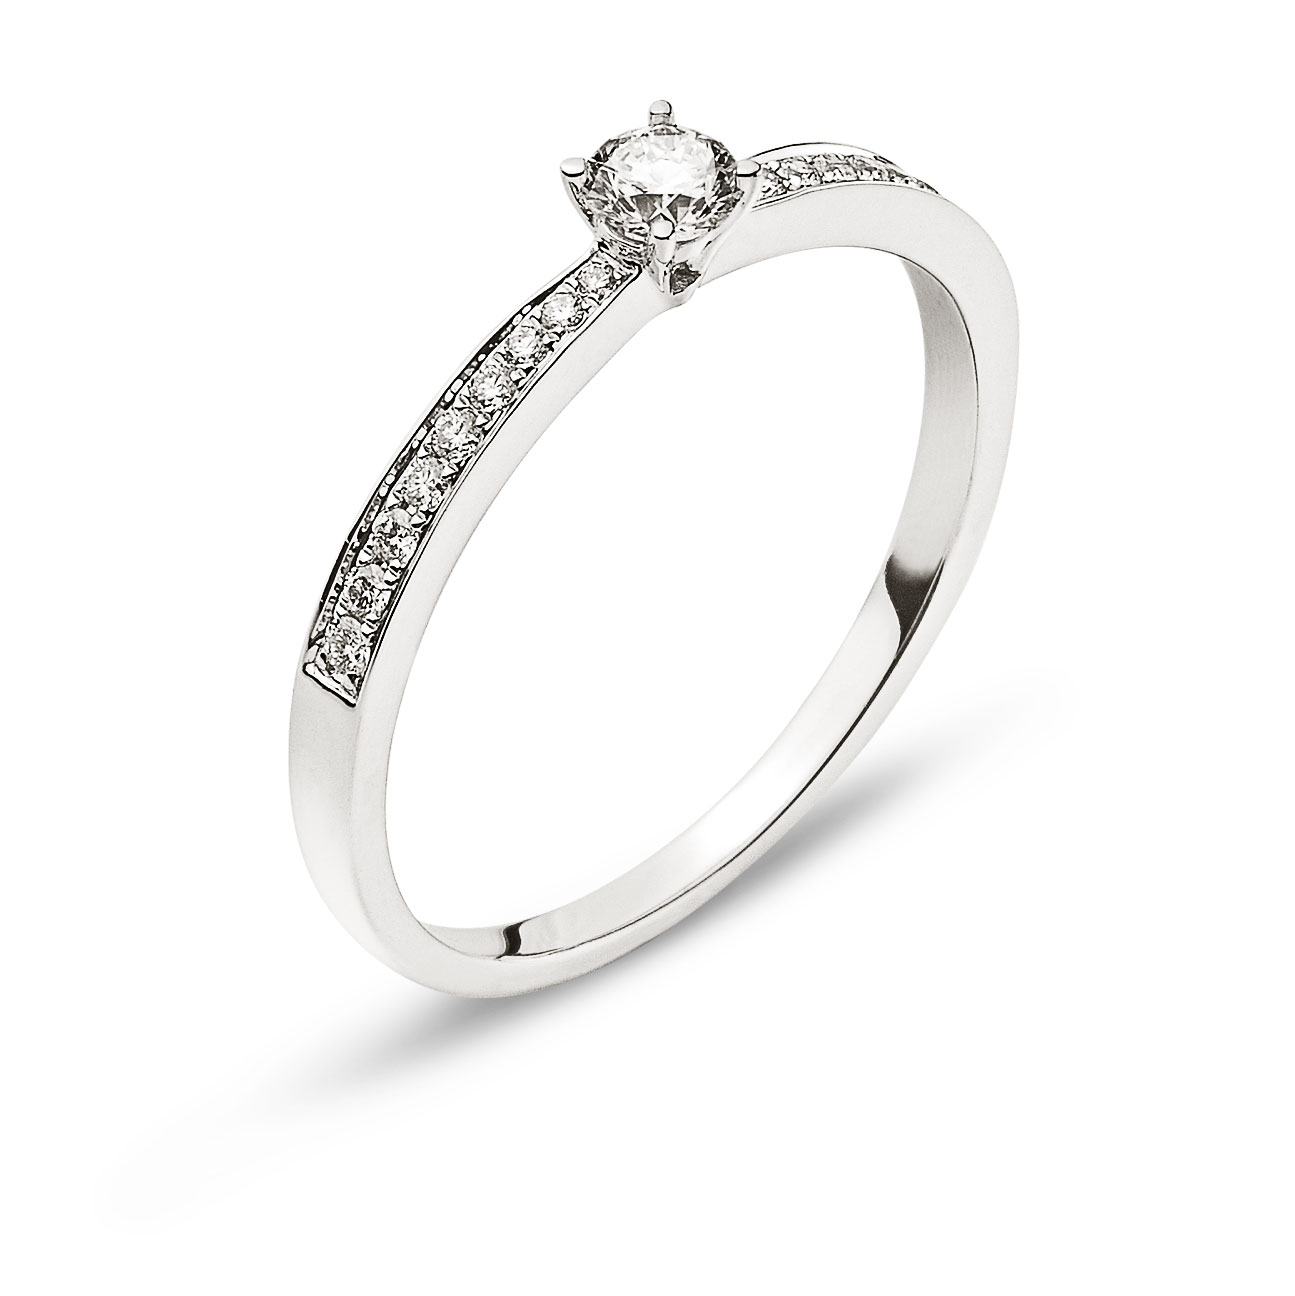 AURONOS Prestige Ring white gold 18K diamonds 0.24ct